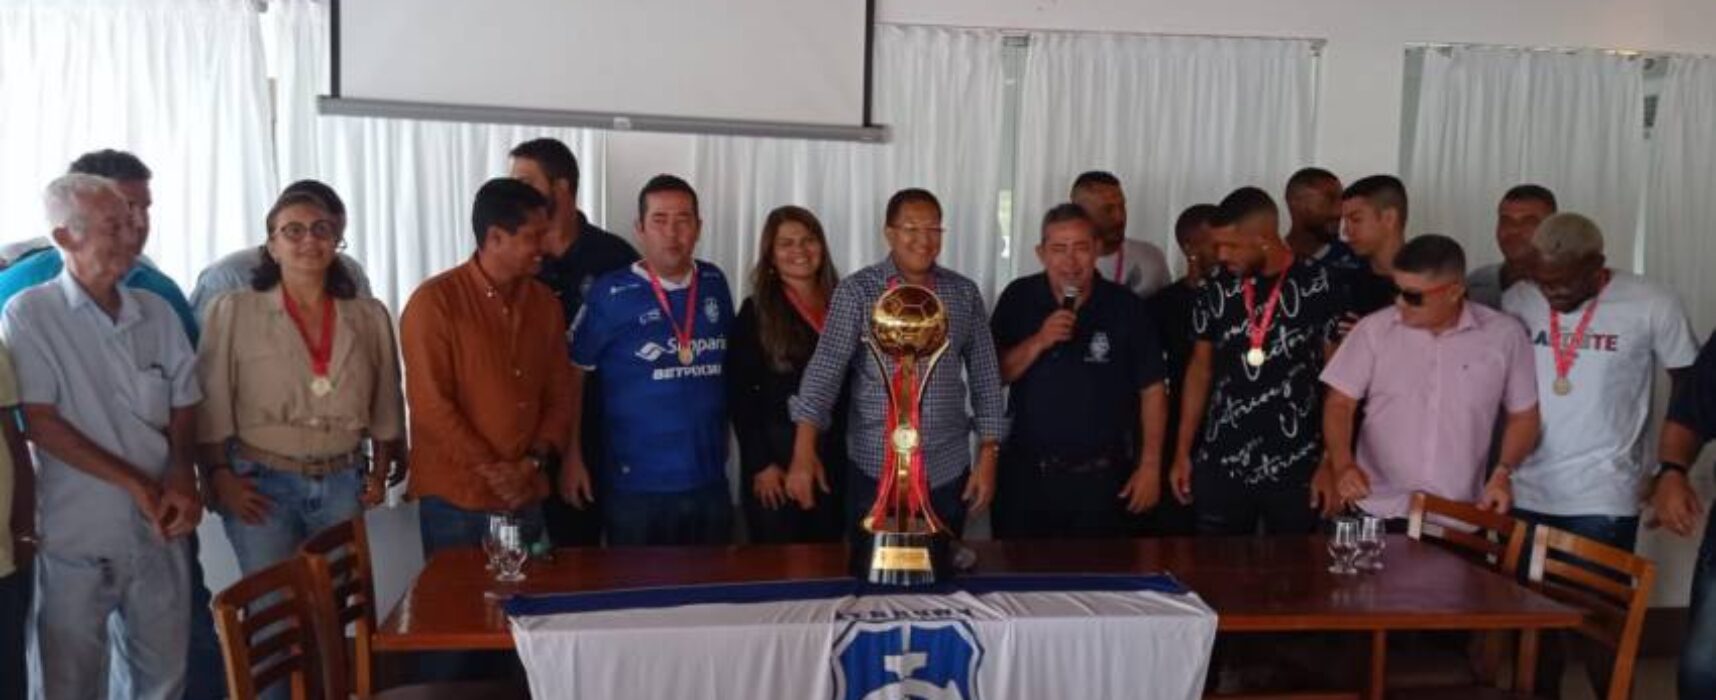 Prefeito Augusto Castro confraterniza-se com a equipe bicampeã do time Itabuna Esporte Clube